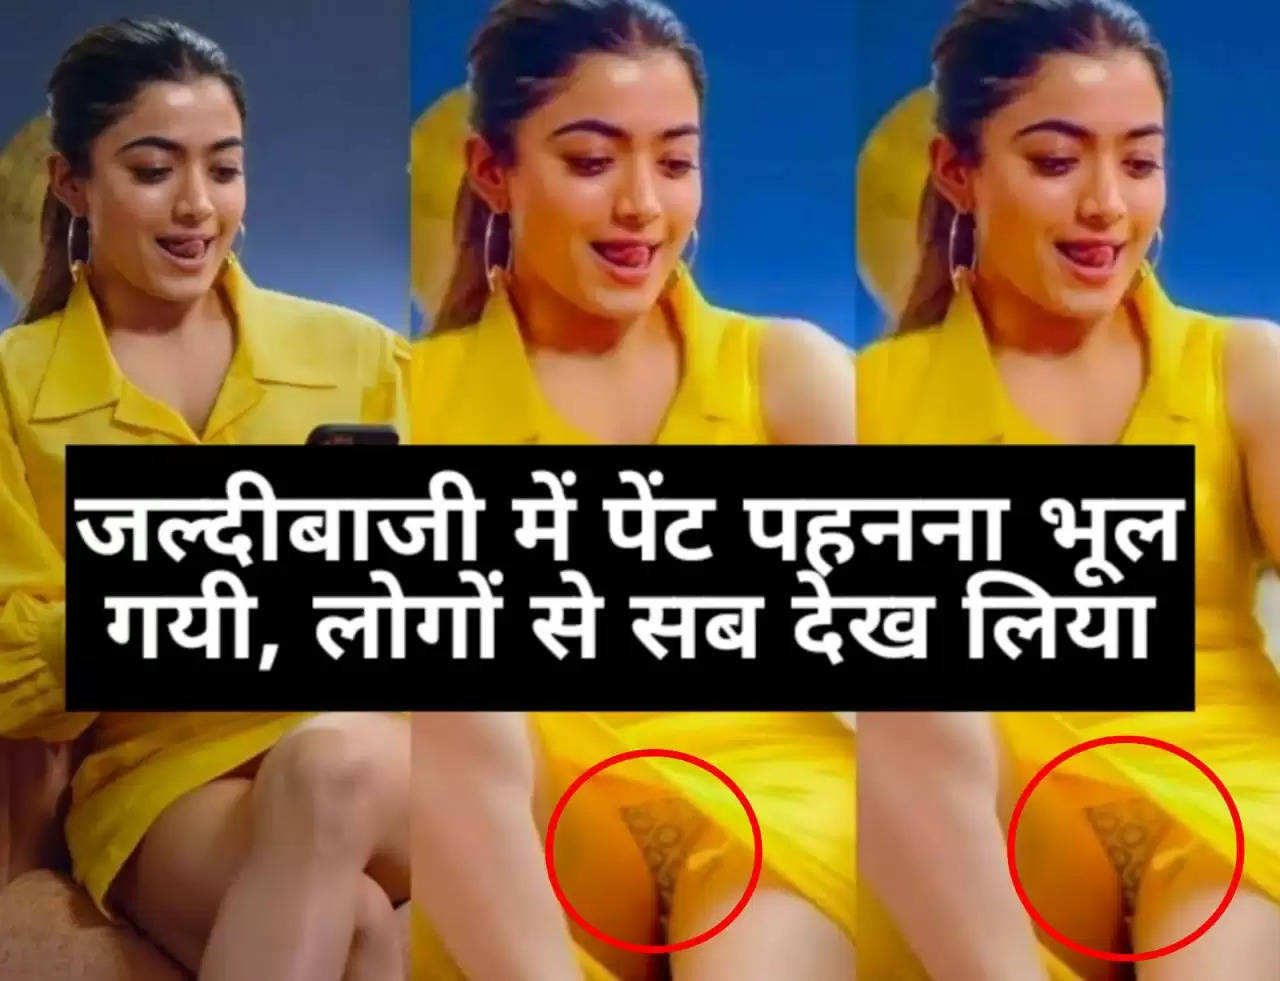 जल्दबाजी में पैंट पहनना भूल गई Rashmika Mandanna, मचा बवाल, Social Media पर वायरल हुआ Video...